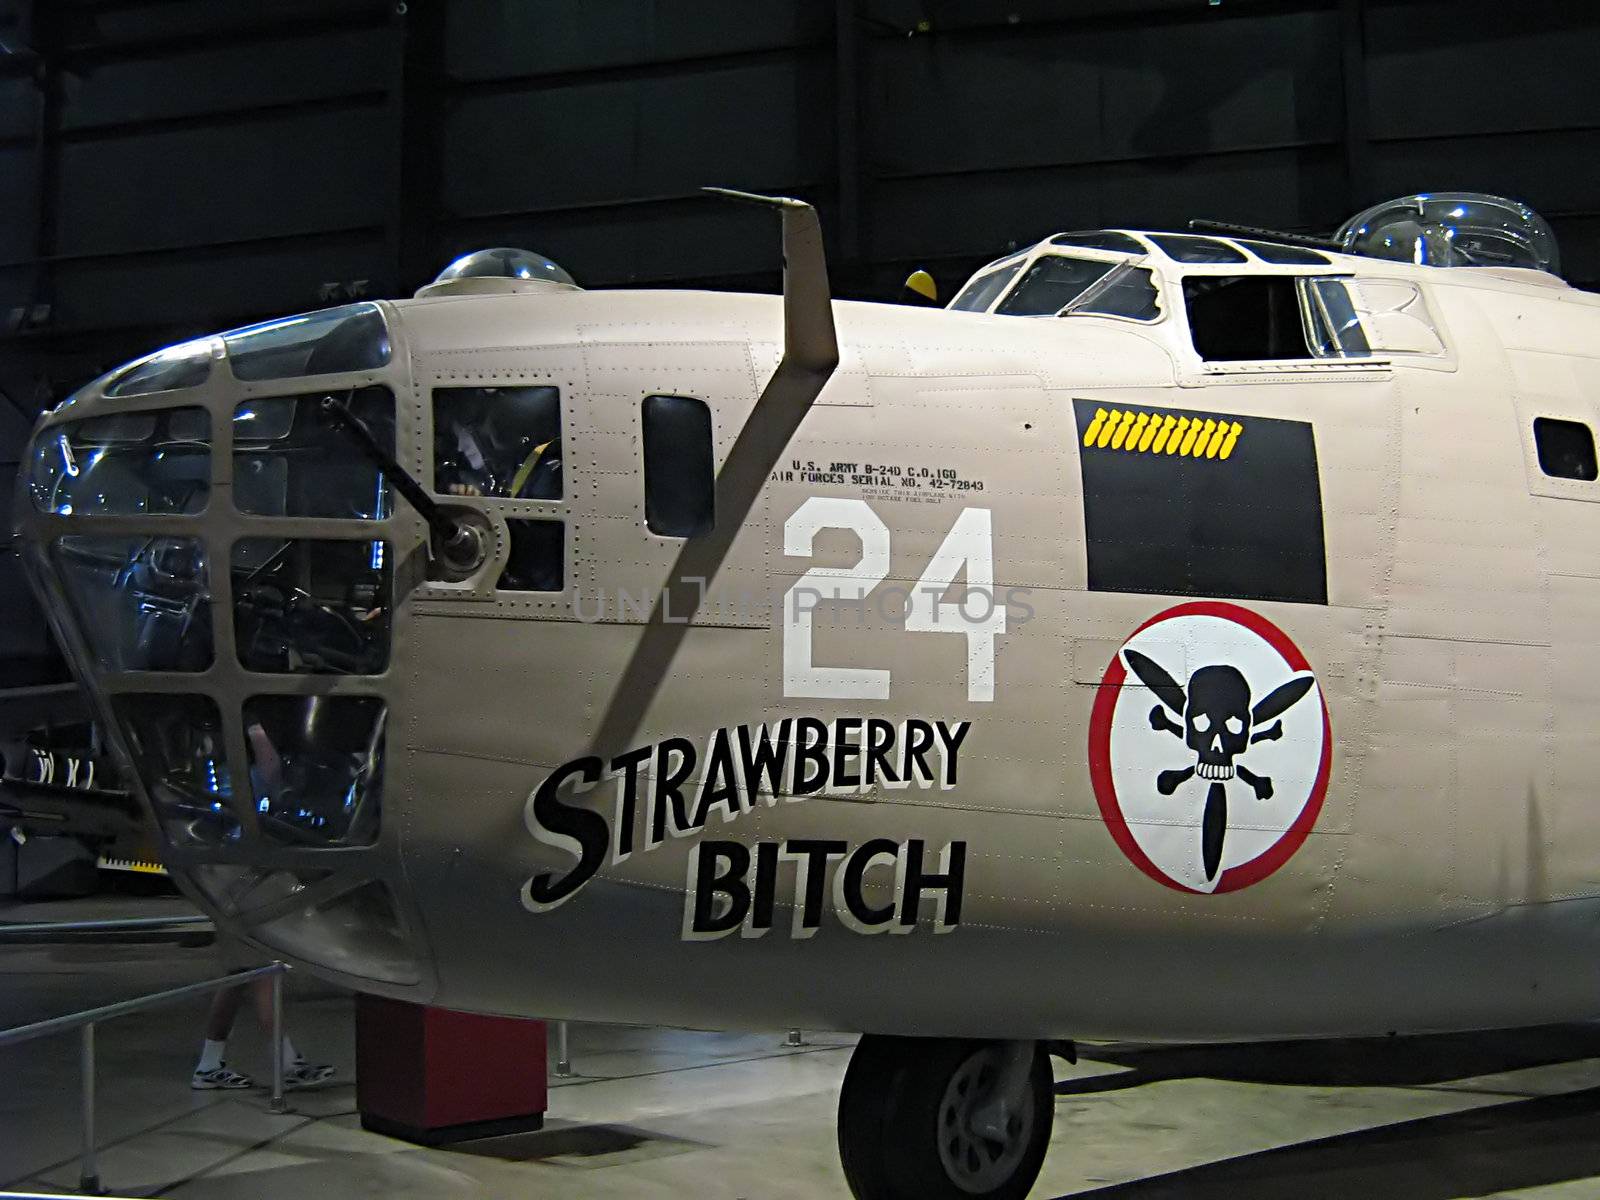 A photograph of nose art on a World War II era airplane.